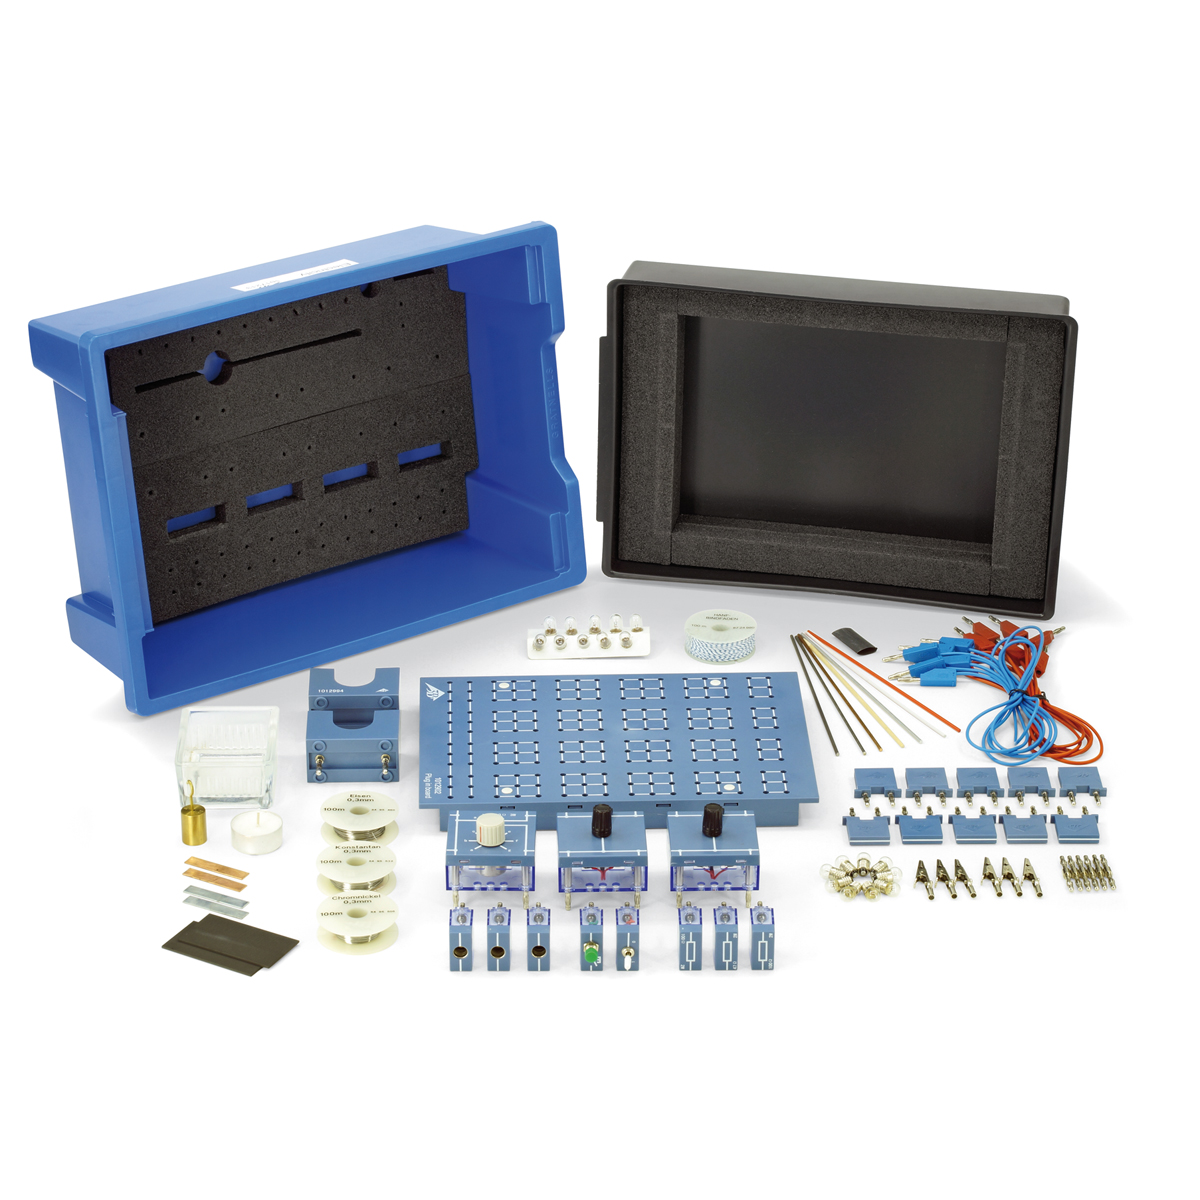 kit herramientas para aula de electricidad,kit prácticas FP electricidad